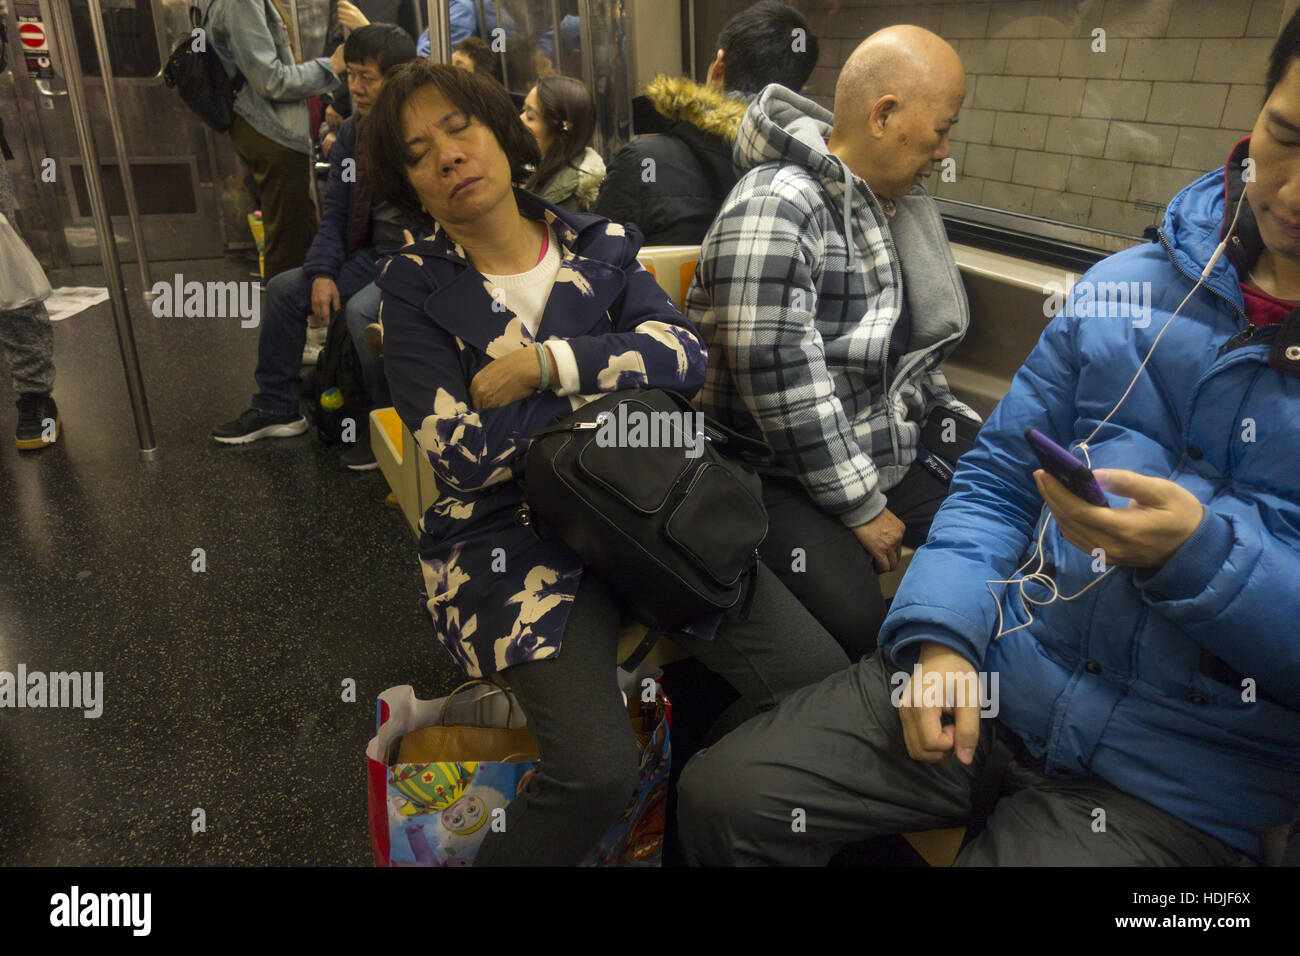 Viele chinesische New Yorker fahren den R-Zug, der durchläuft die lokalen Chinatown während der Feierabendverkehr in Brooklyn, NY. Stockfoto